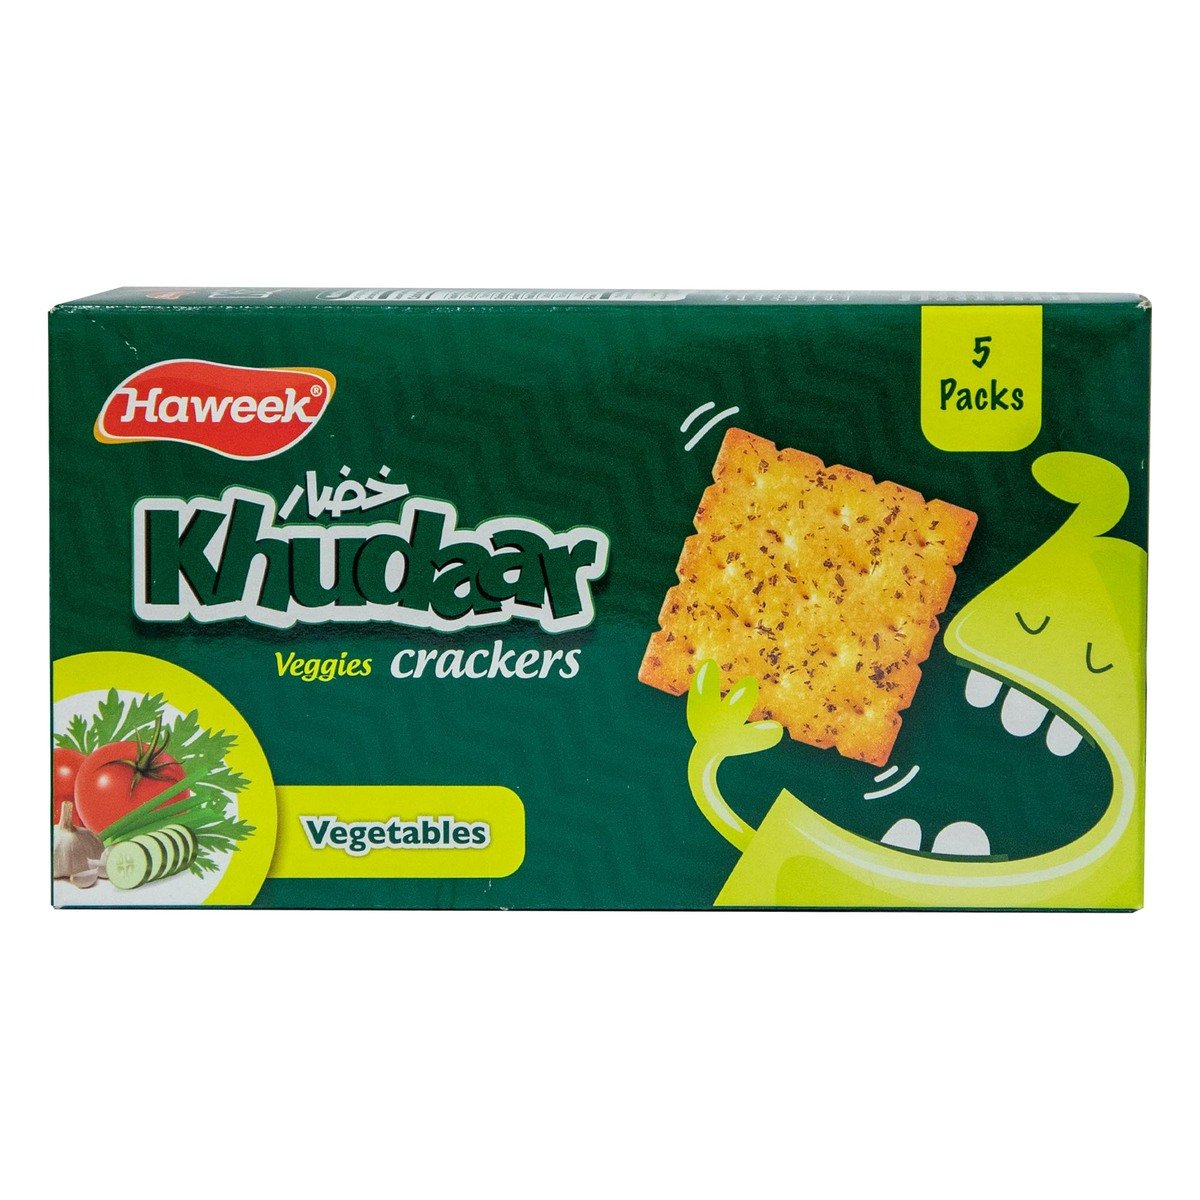 Haweek Khudaar Veggies Crackers 110g